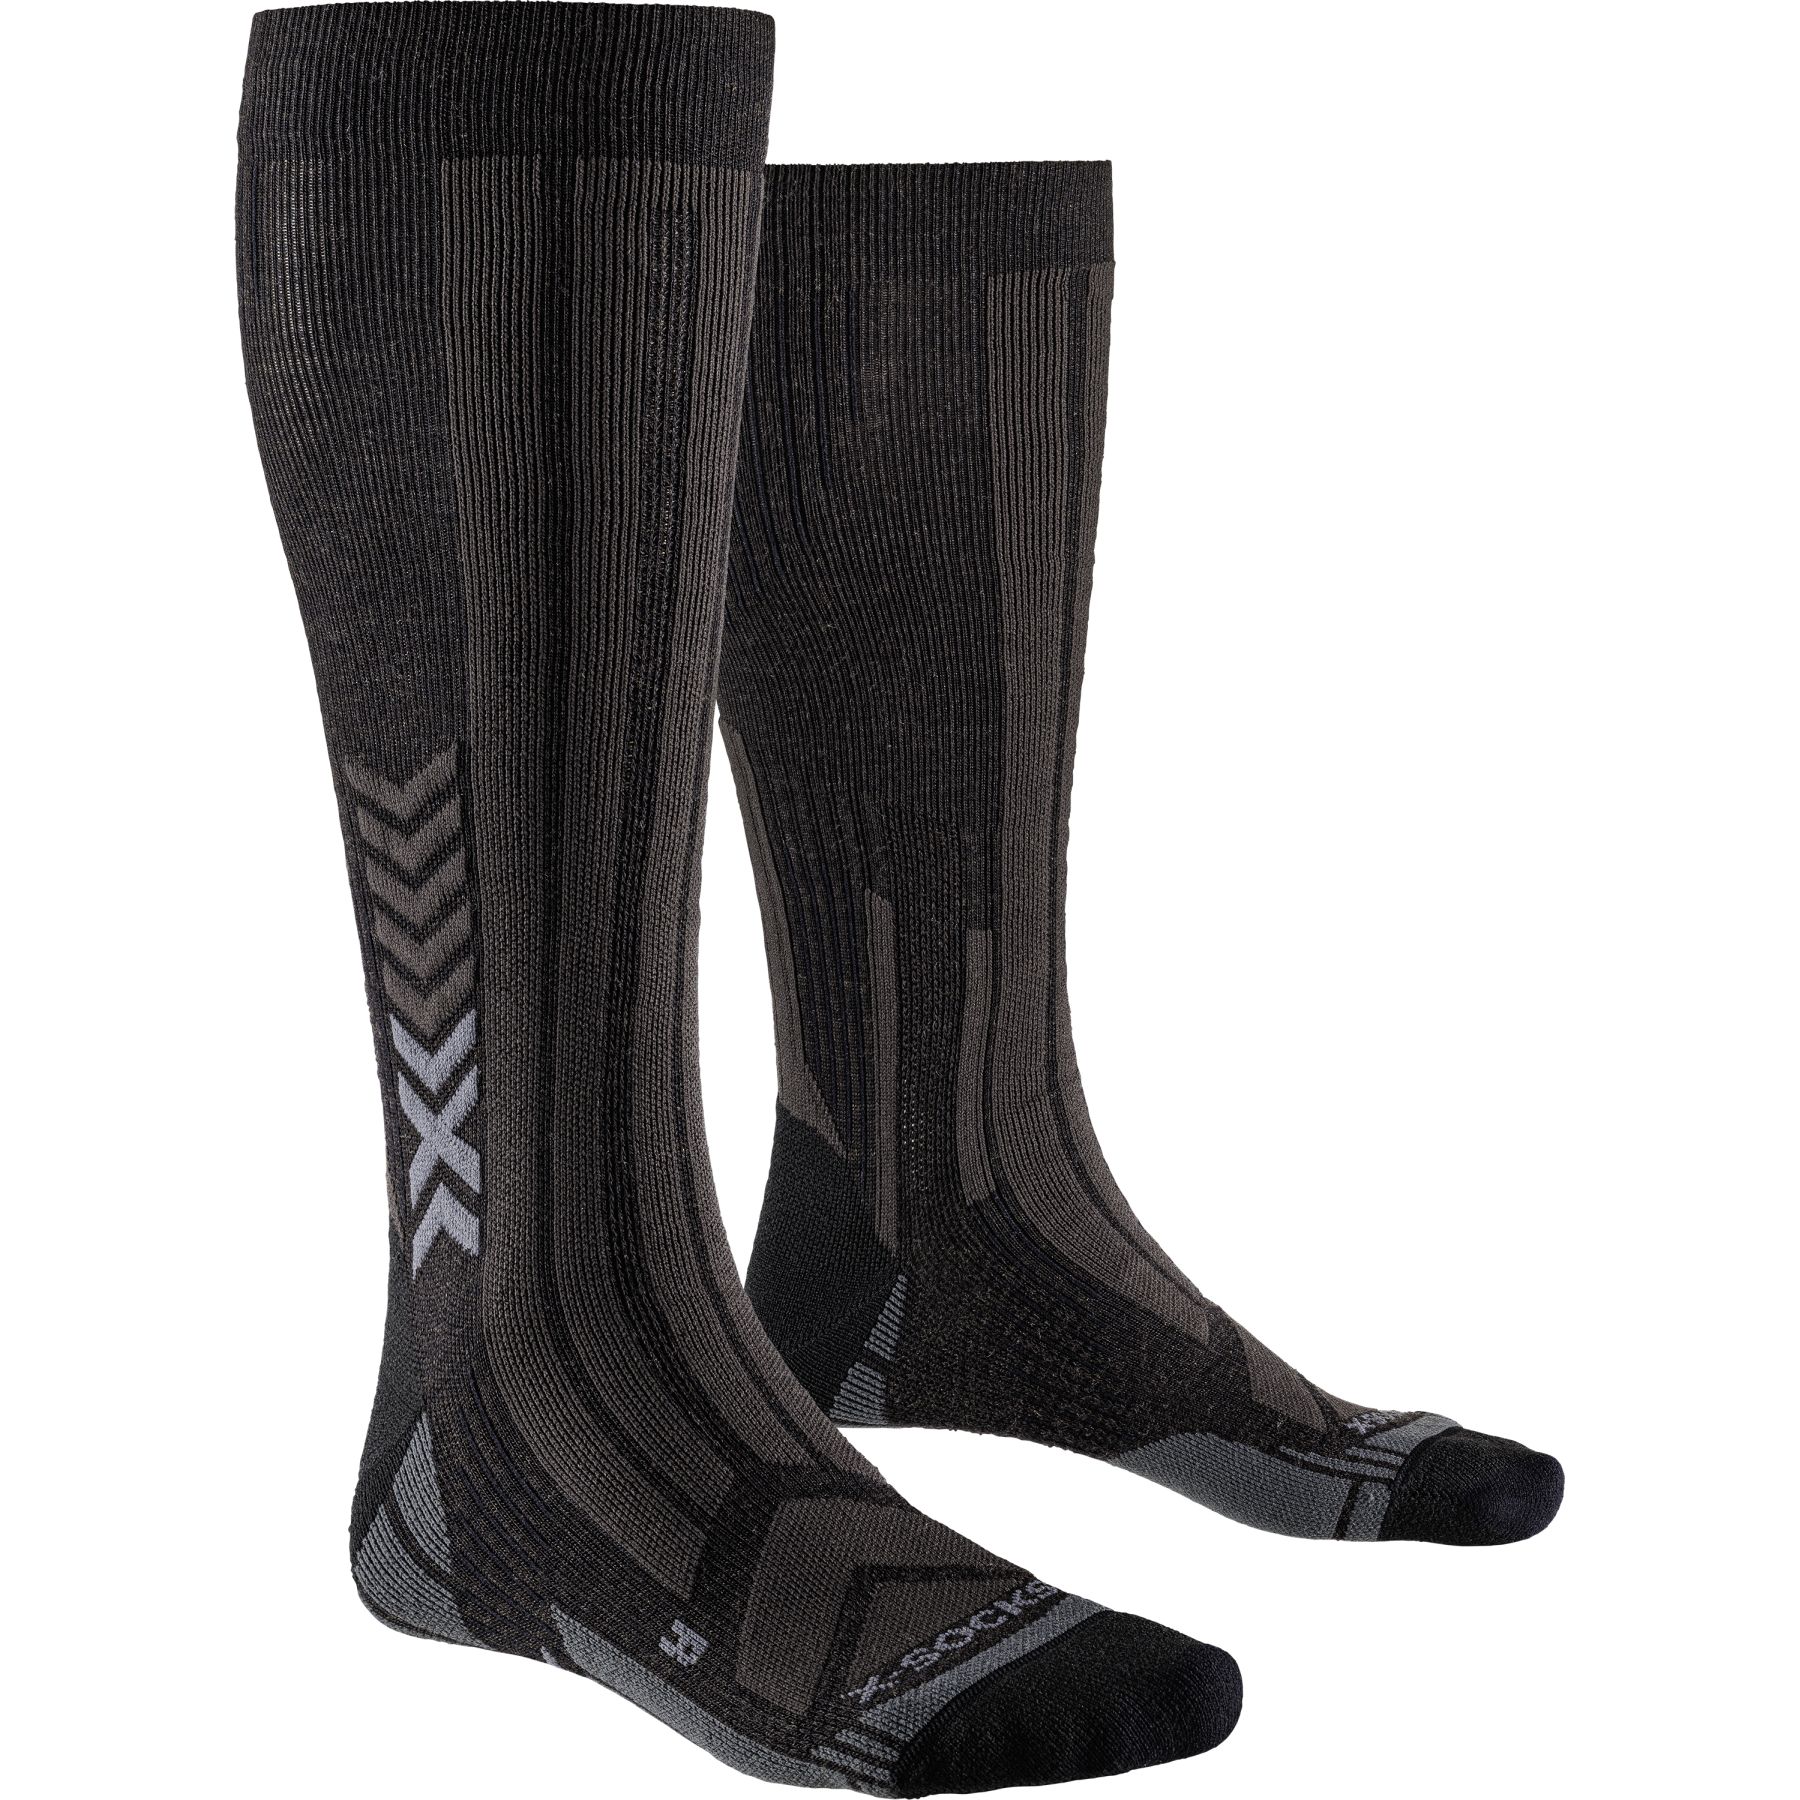 Produktbild von X-Socks Mountain Expert Merino OTC Socken - black/charcoal